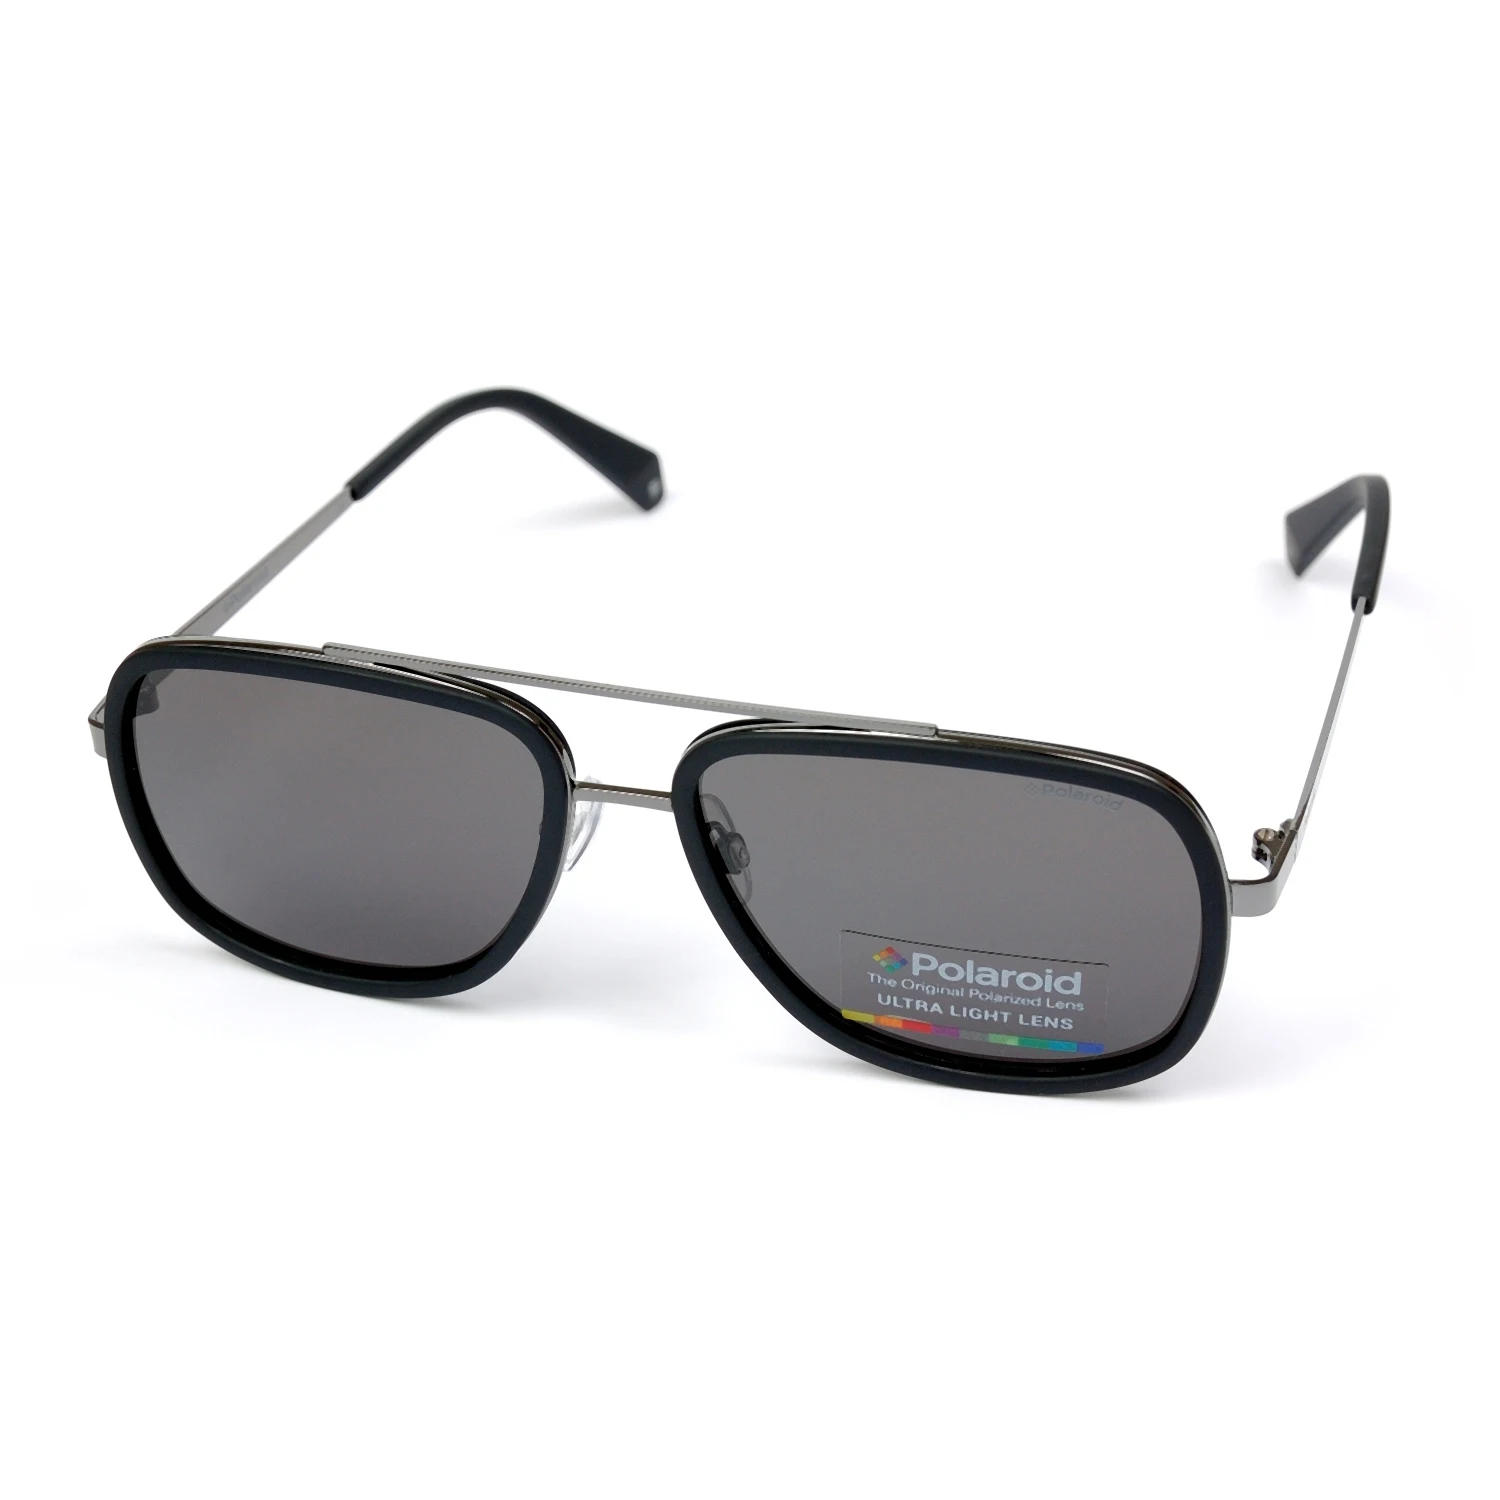 Солнцезащитные очки Polaroid солнечные PLD 6033.S.807.M9|Мужские солнцезащитные очки| |